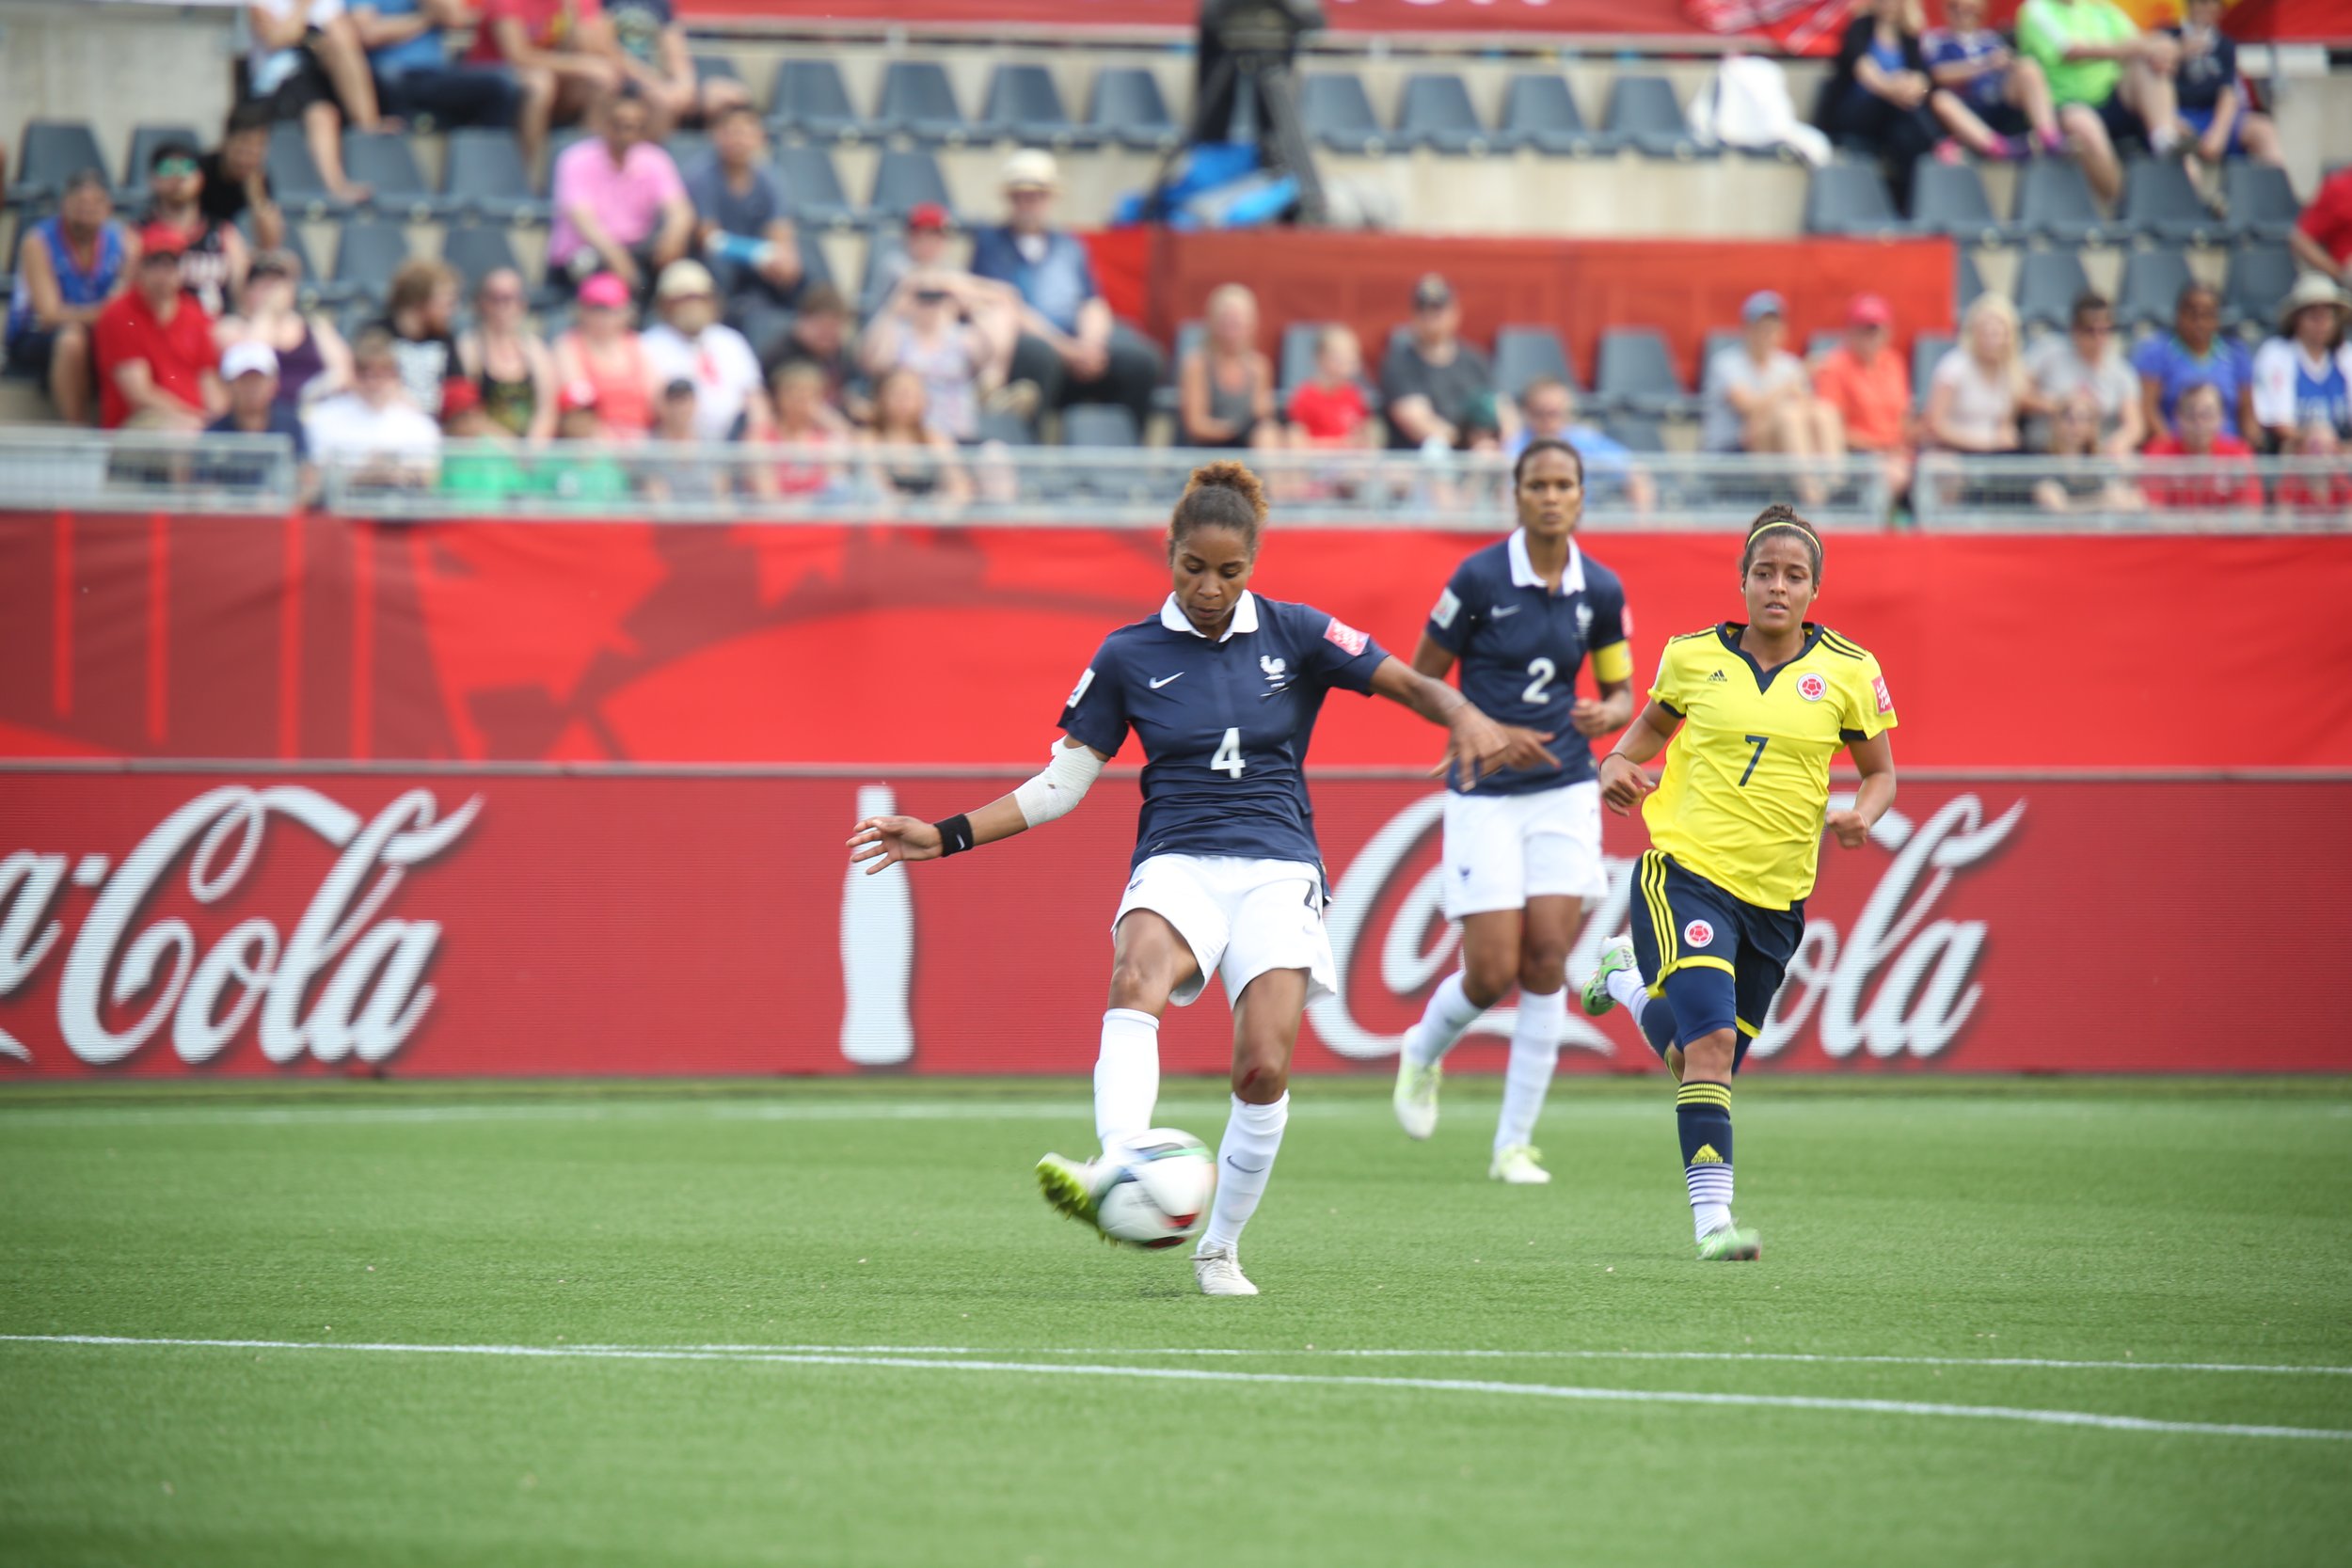 Laura Georges - France-Colombie Féminine - 1er tour de la coupe du monde 2015.jpg